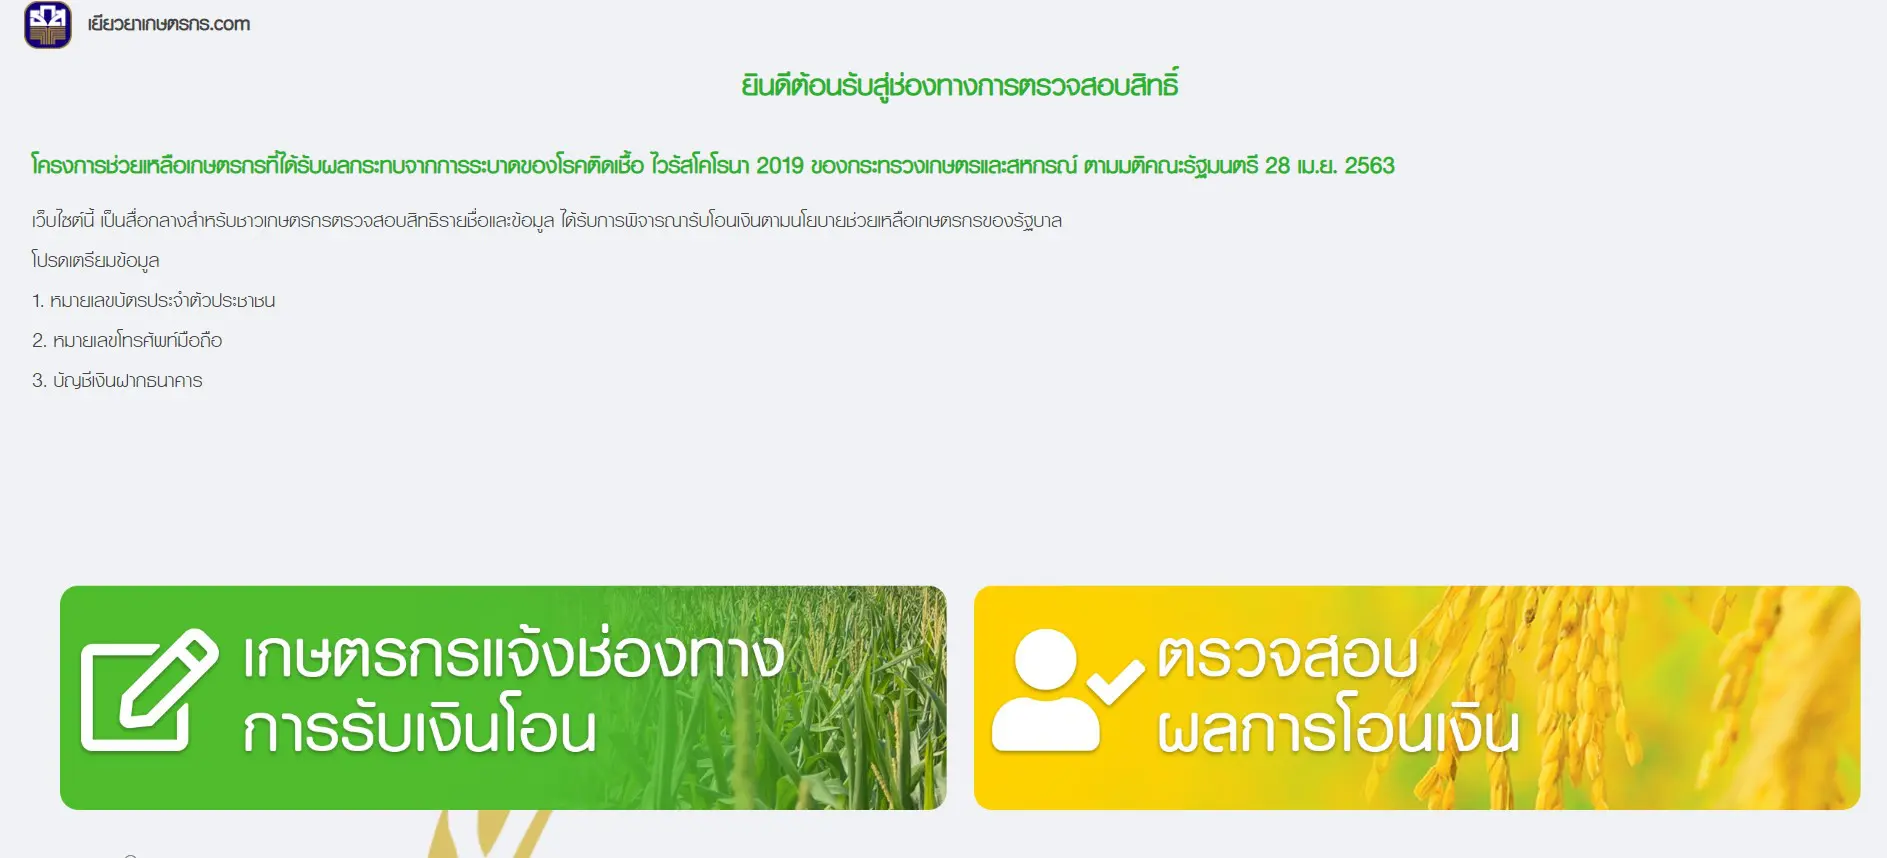 เปิดแล้ว ธ.ก.ส. เปิดช่องทางการตรวจสอบสิทธิ์รับเงินเยียวยาเกษตรกร www.เยียวยาเกษตรกร.com รับเงิน 15,000 บาท